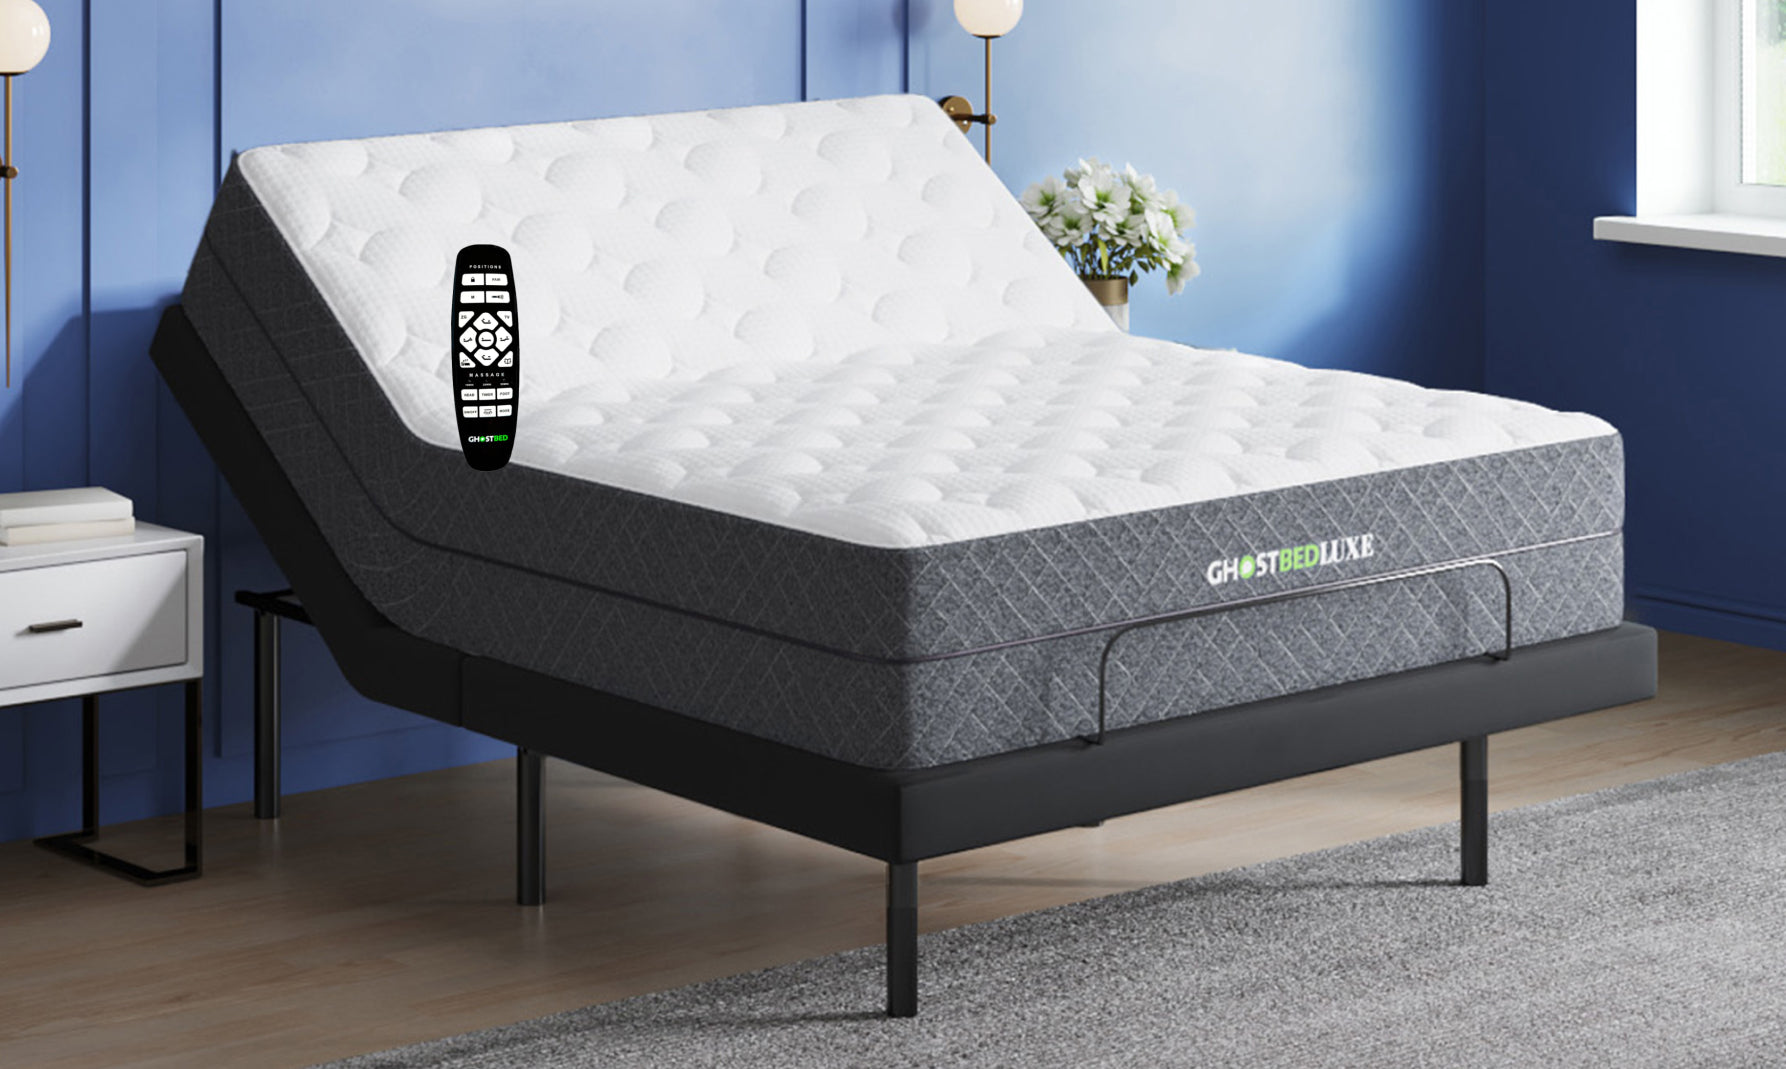 GhostBed Adjustable Bed Frame and Mattress Set